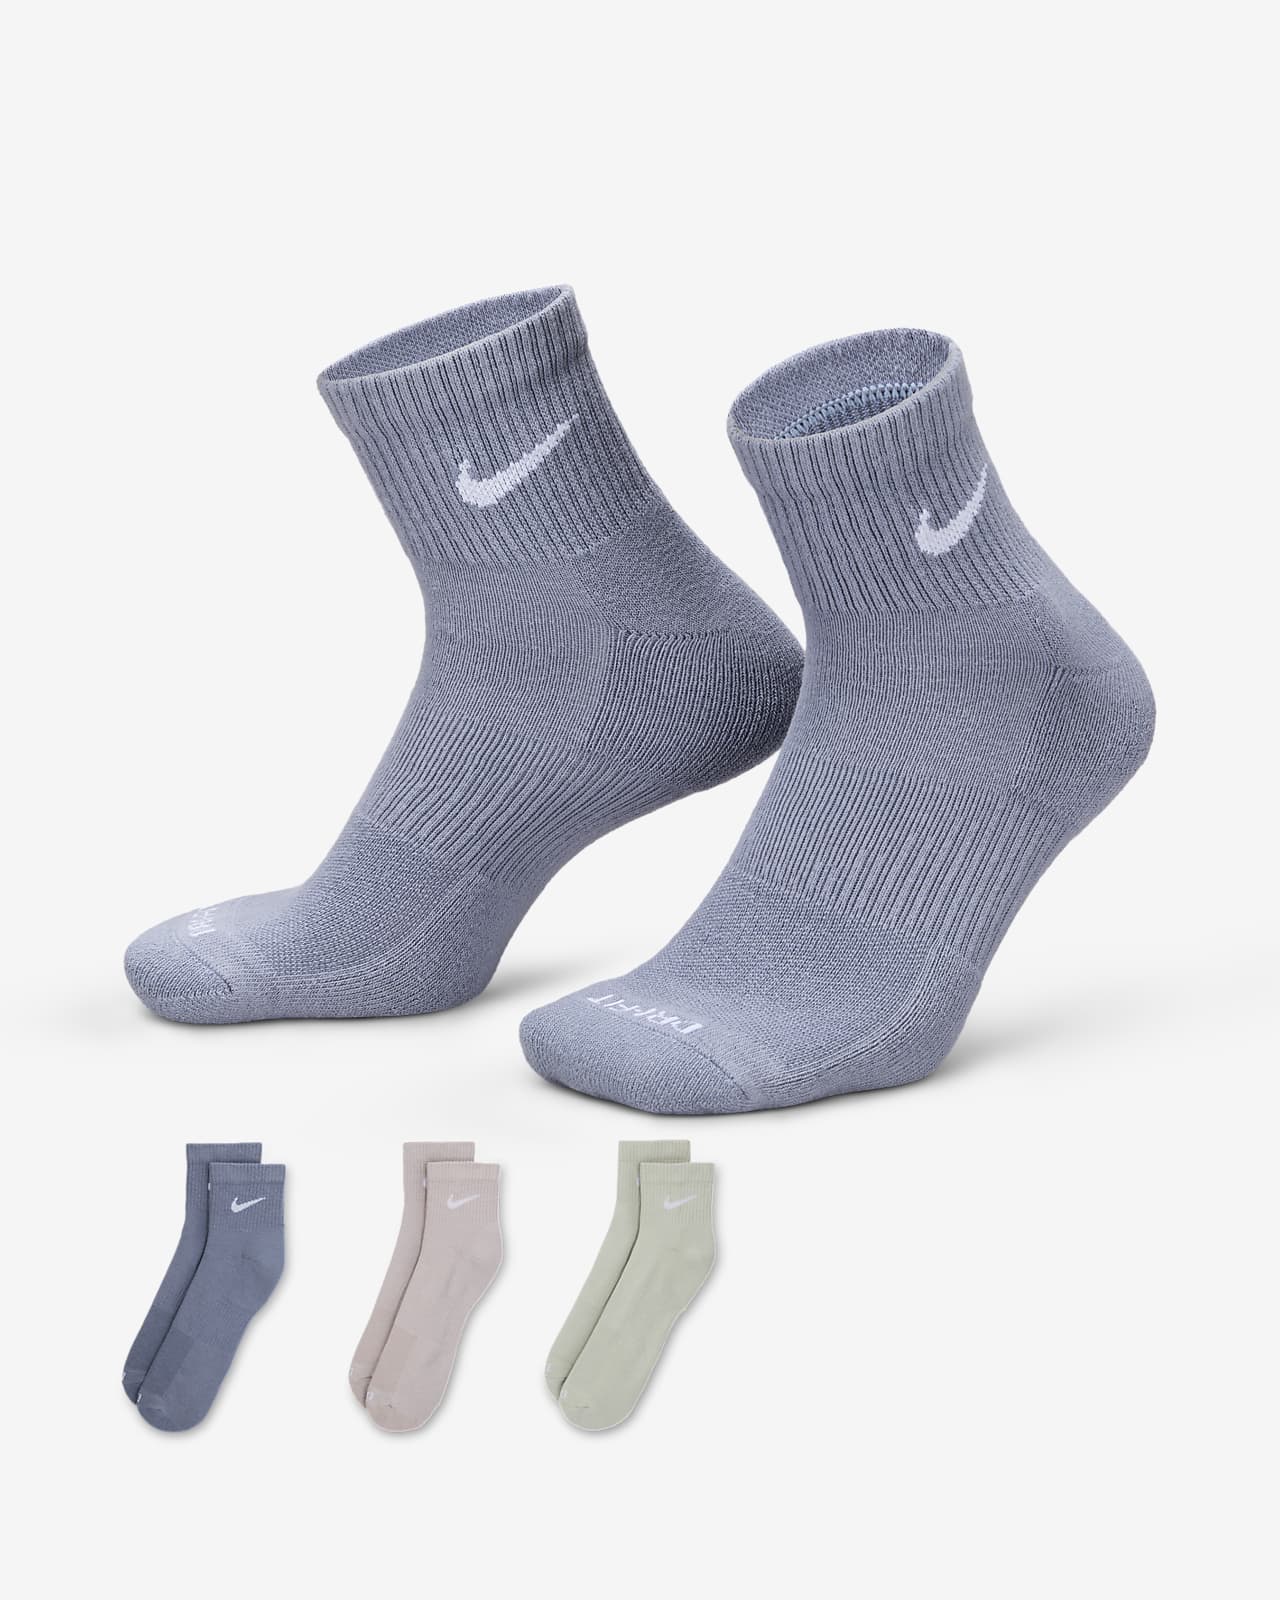 NIKE Everyday Plus Cushioned Socks DQ9168 902 - Shiekh